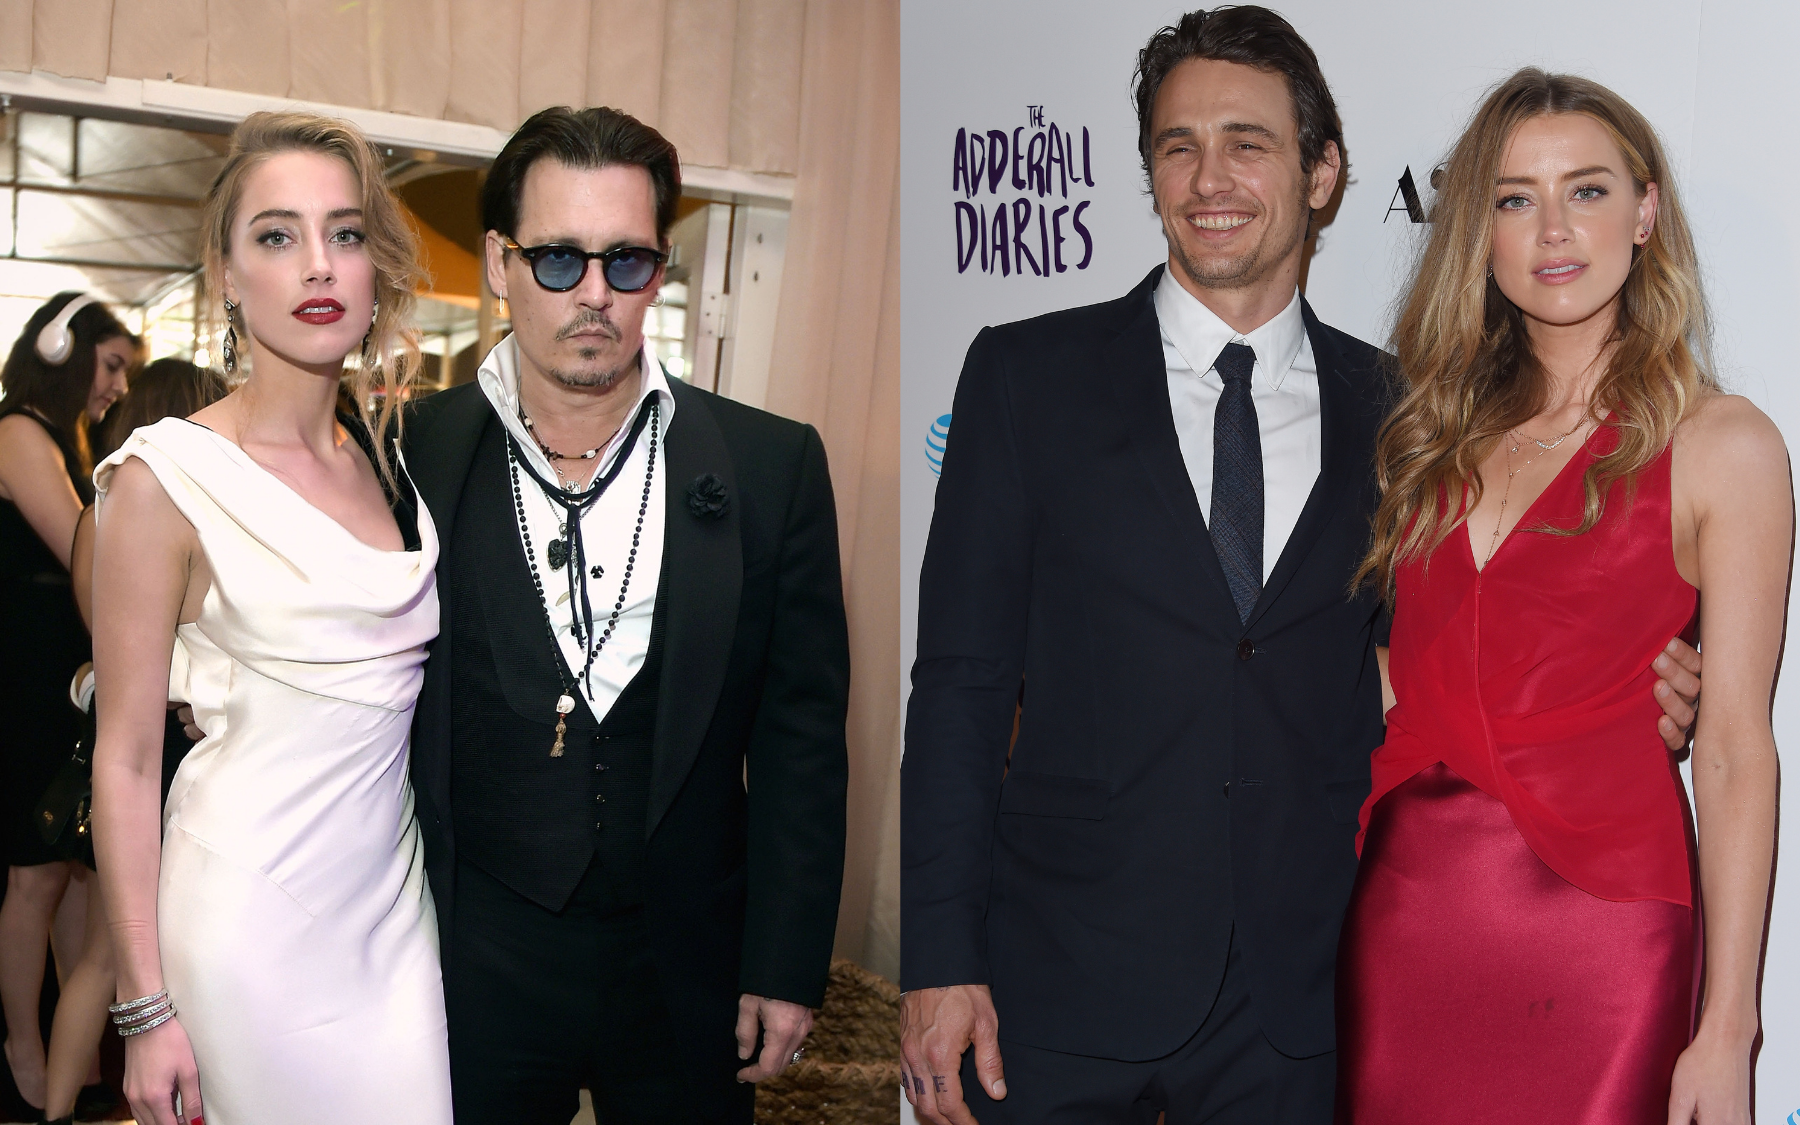 Amber Heard claims Johnny Depp wants to kill her